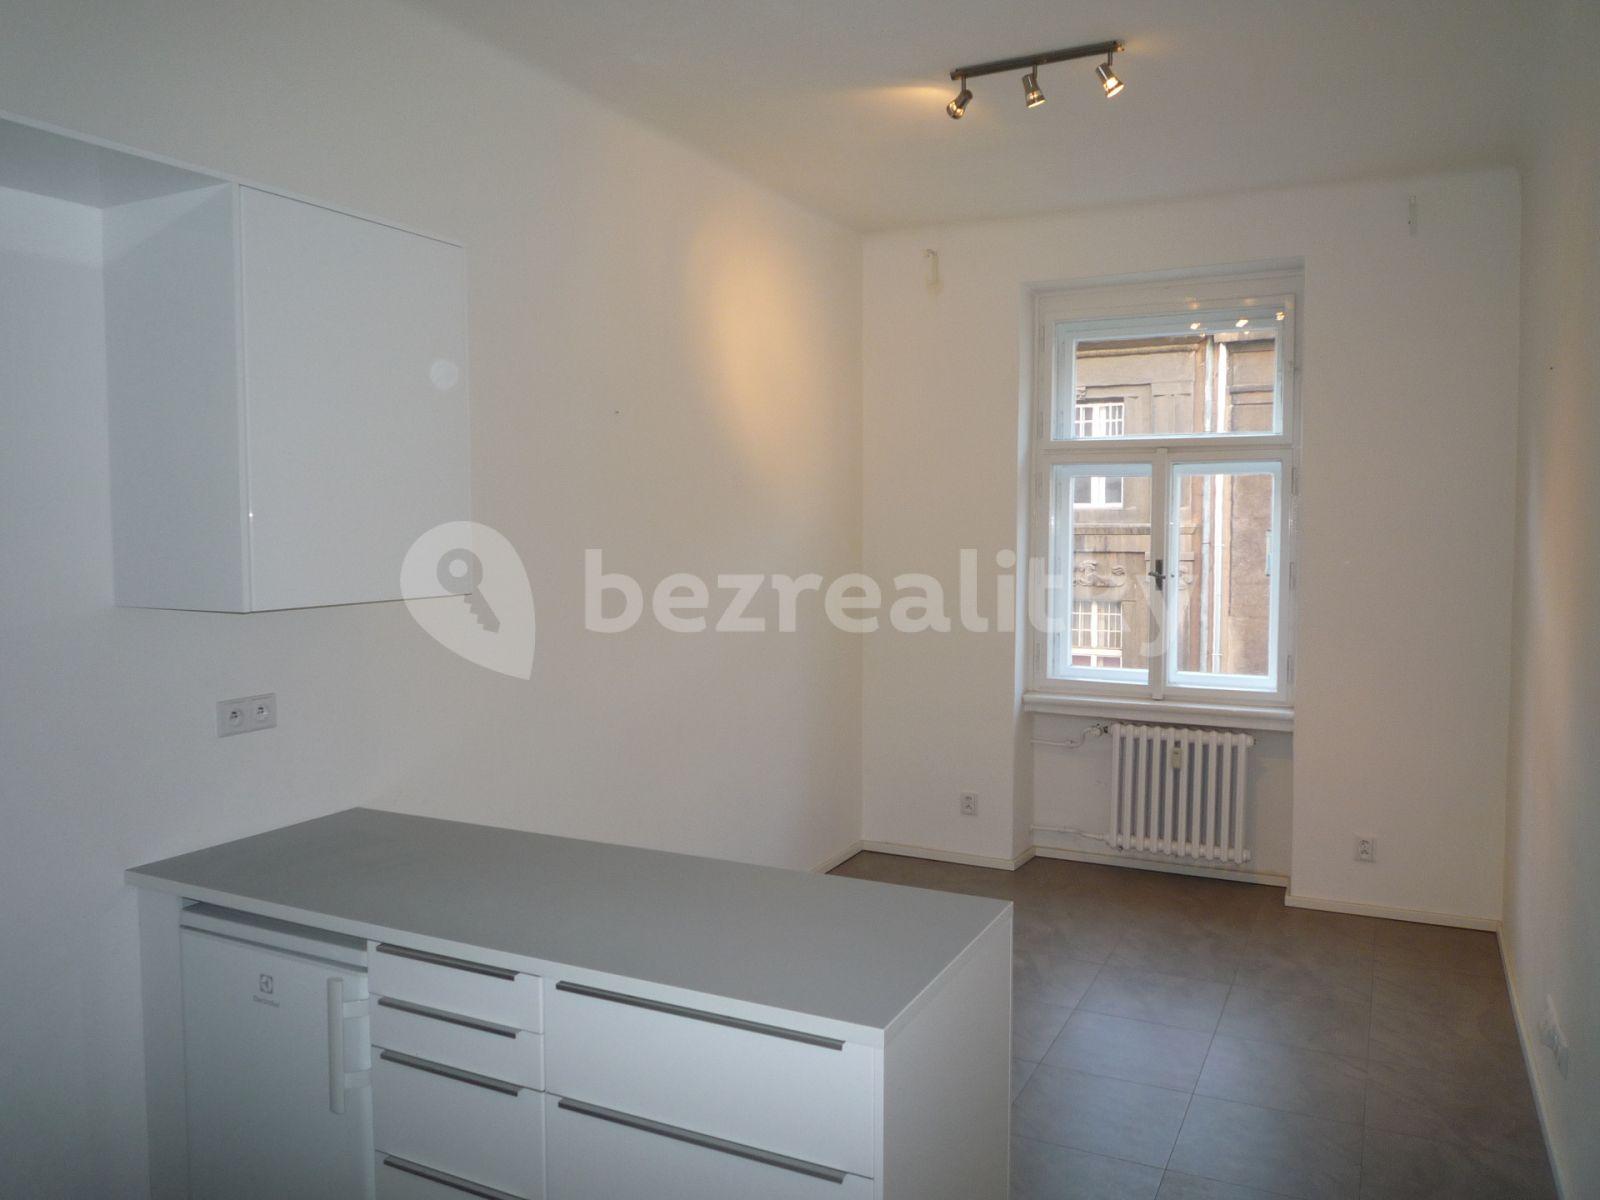 1 bedroom flat to rent, 47 m², Podskalská, Prague, Prague